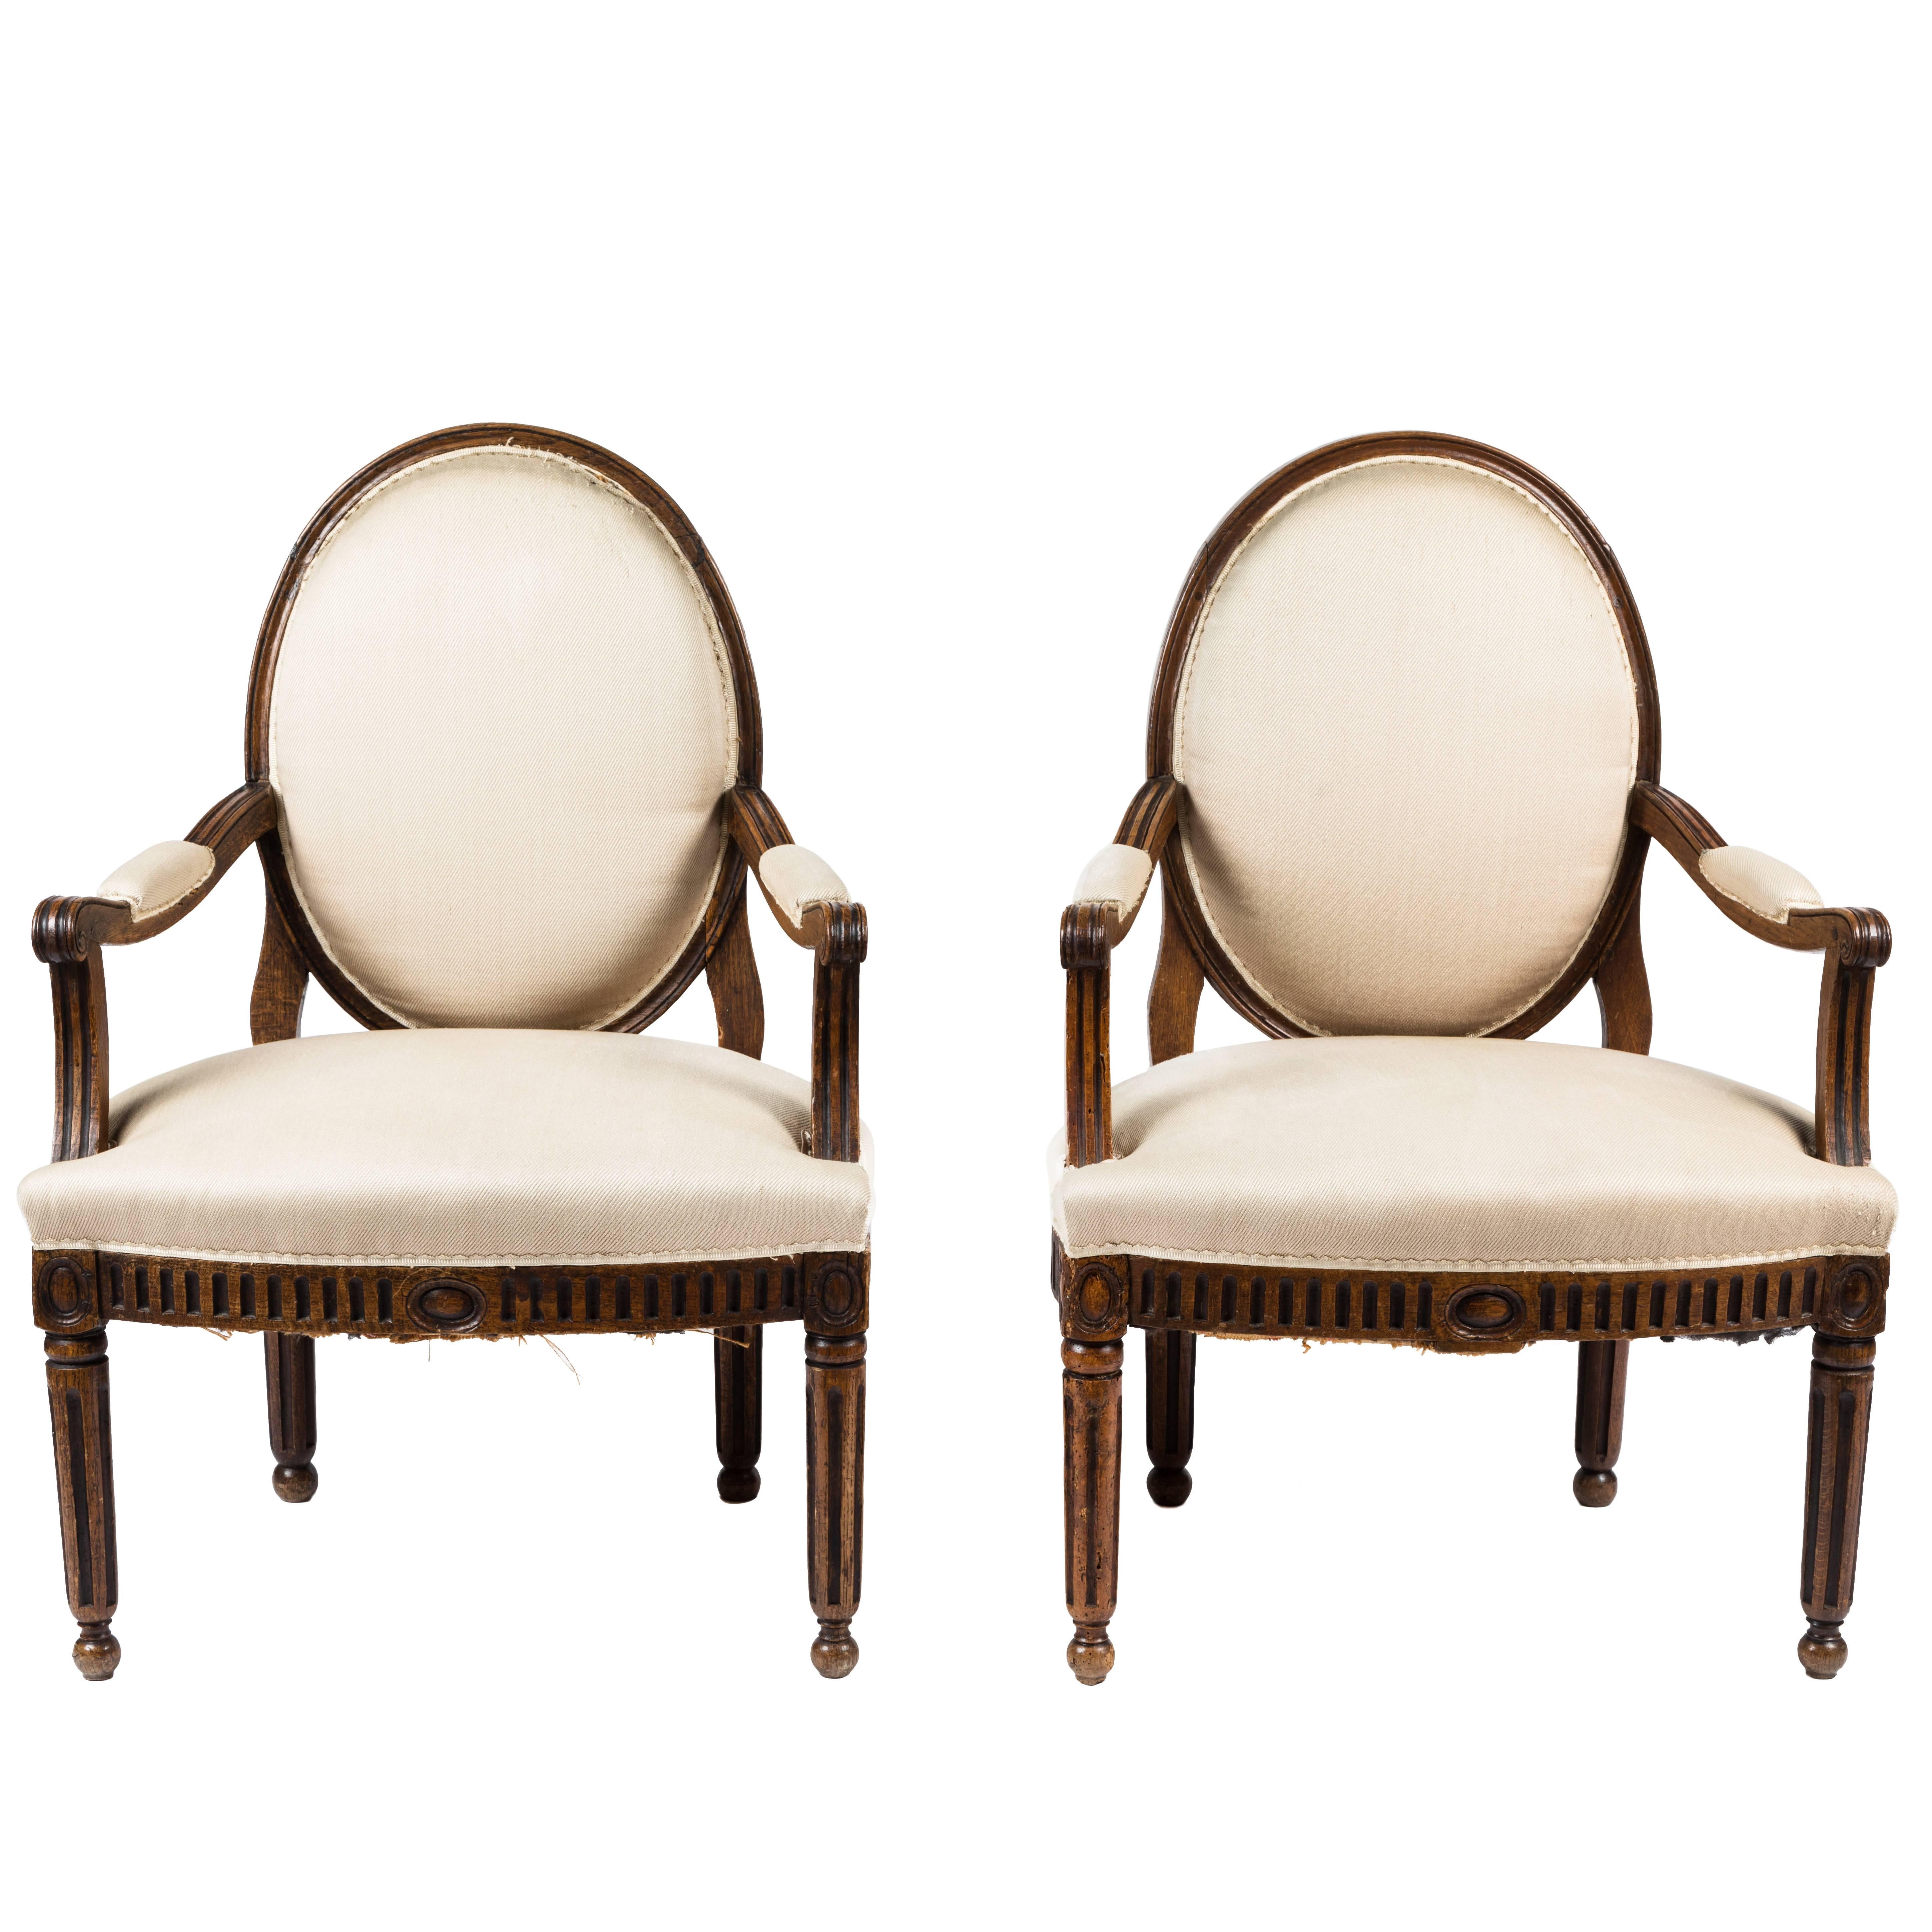 Paire de fauteuils italiens anciens de style néoclassique